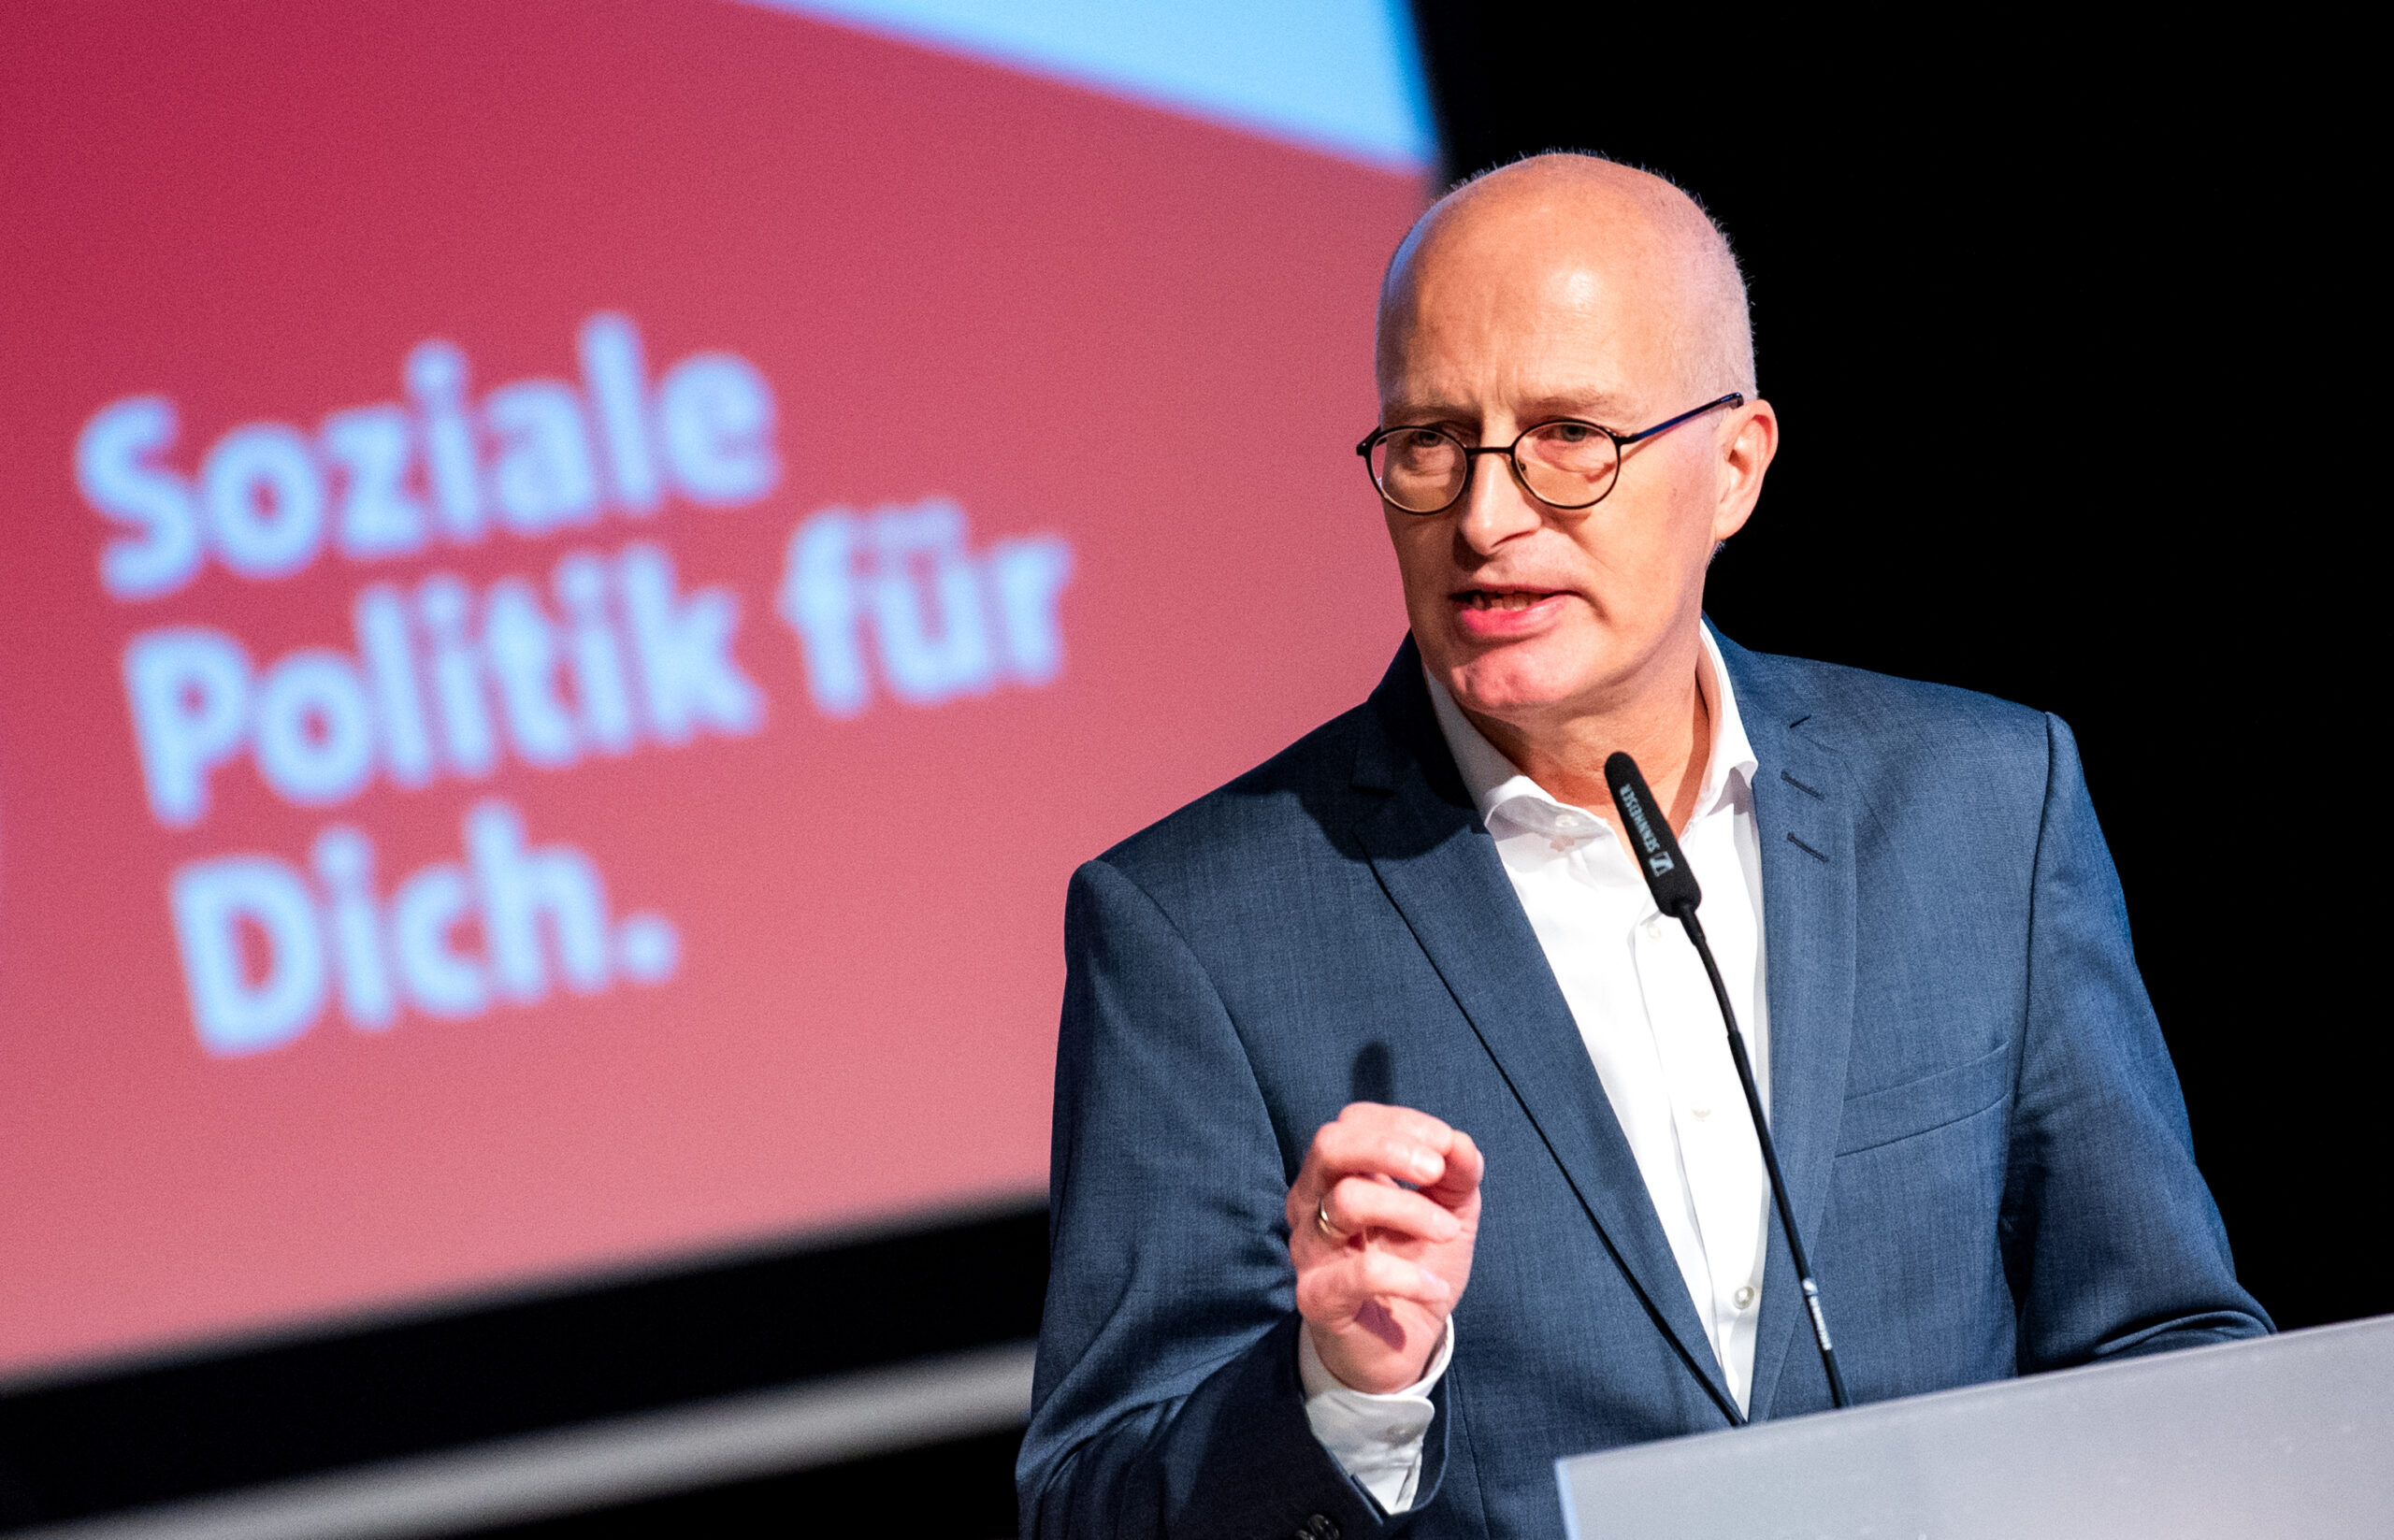 Bürgermeister Peter Tschentscher (SPD) hat über Steuererhöhungen gesprochen. (Archivbild)